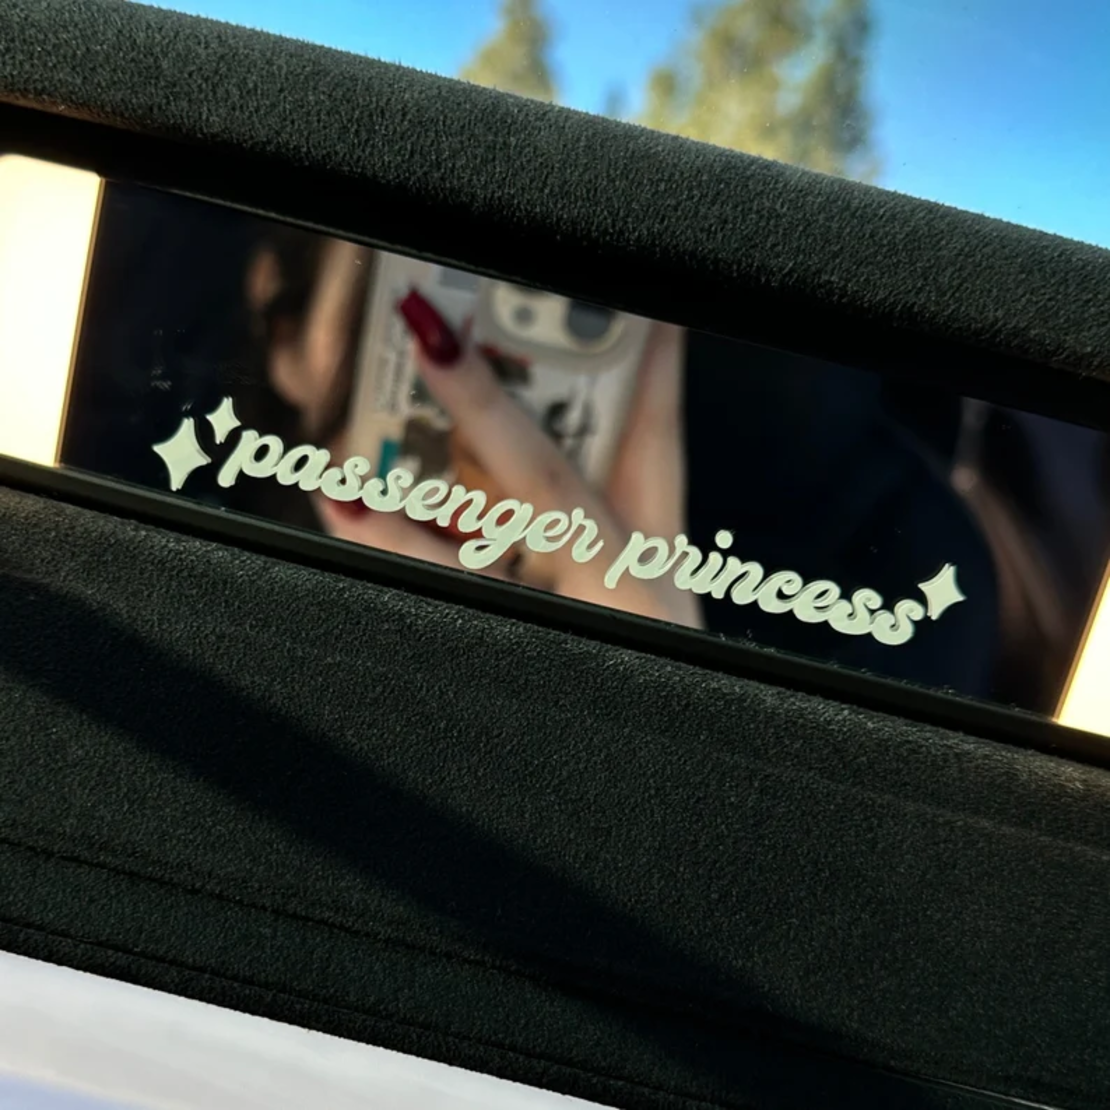 Стикер Passenger princess